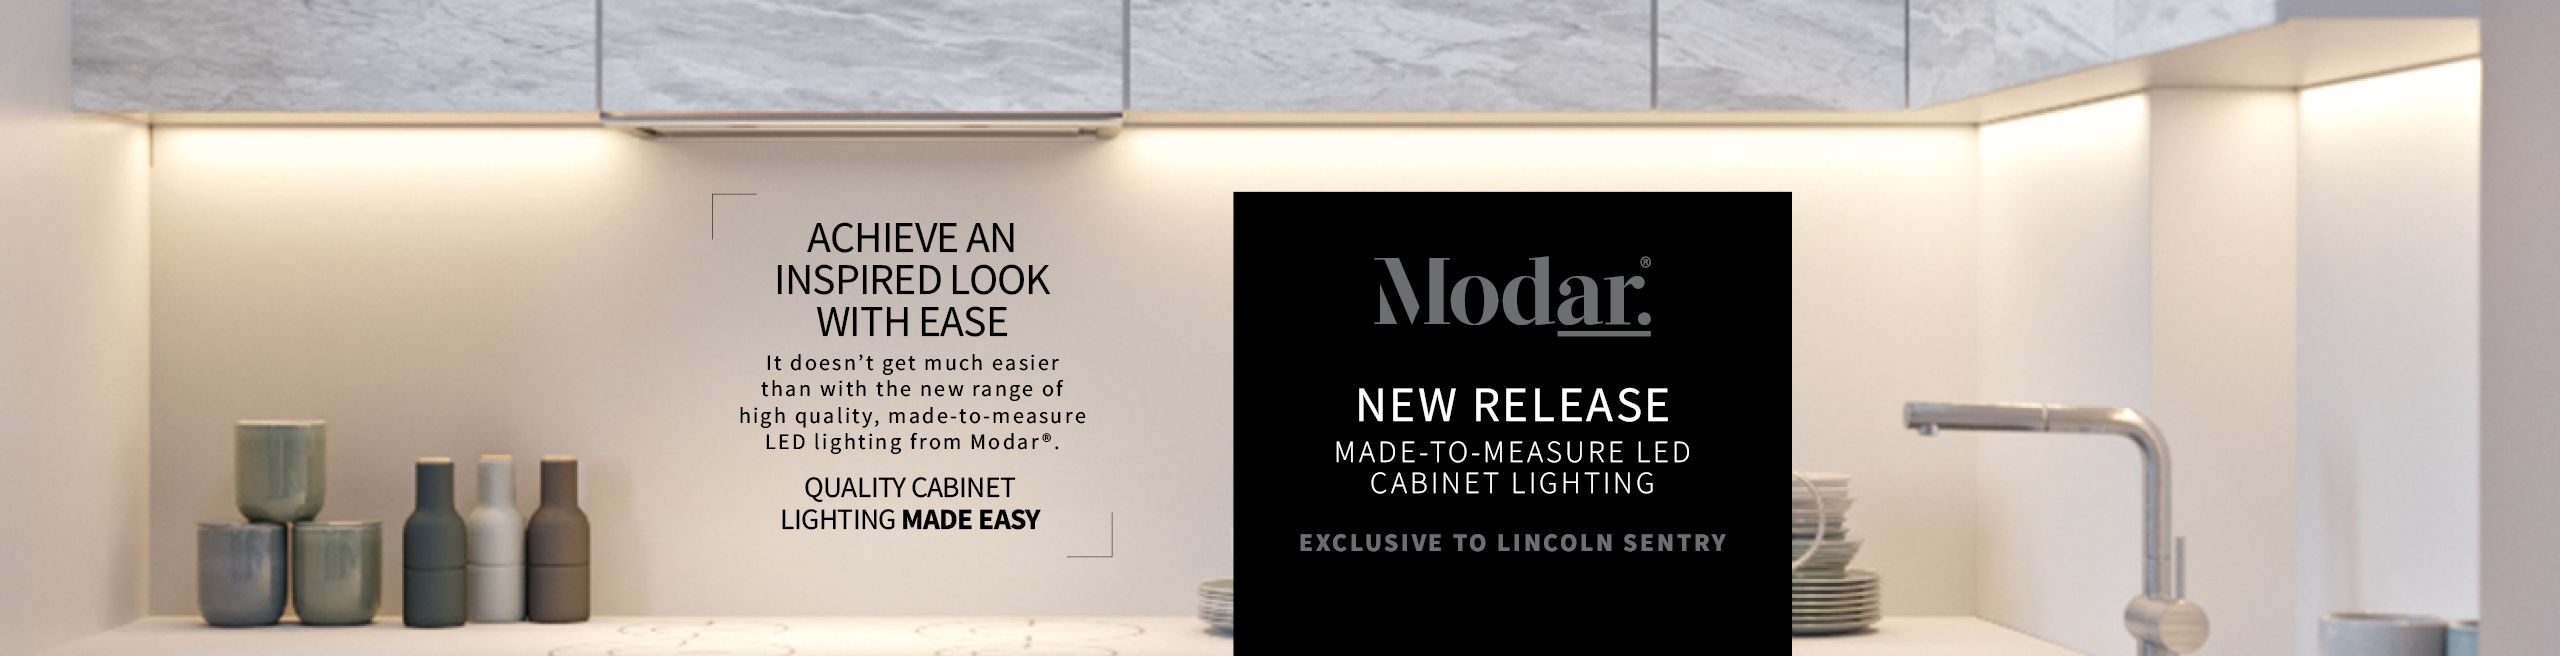 Modar lighting launch web banner header image.jpg